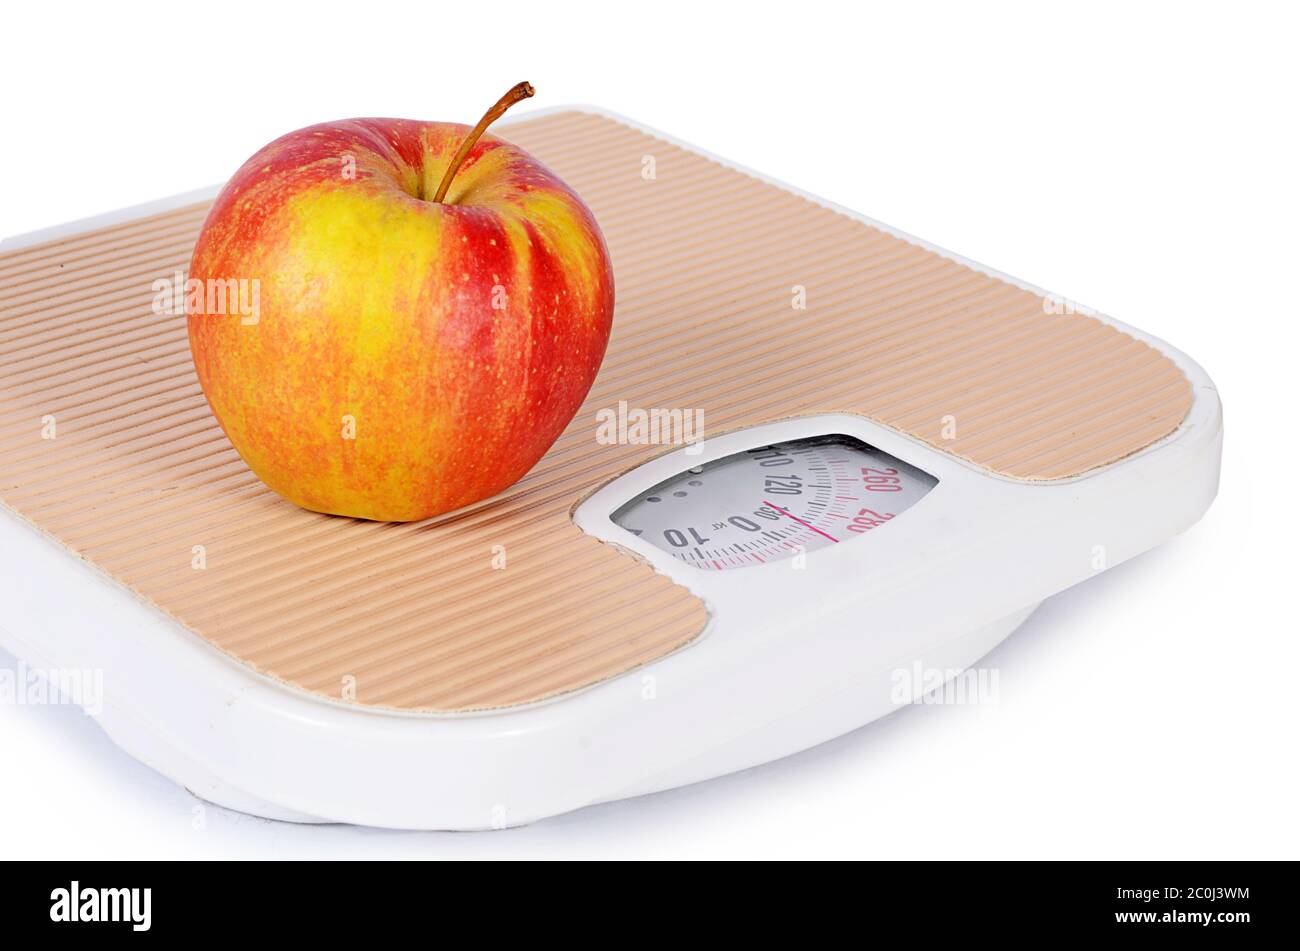 https://c8.alamy.com/comp/2C0J3WM/floor-scales-with-apple-diet-concept-2C0J3WM.jpg